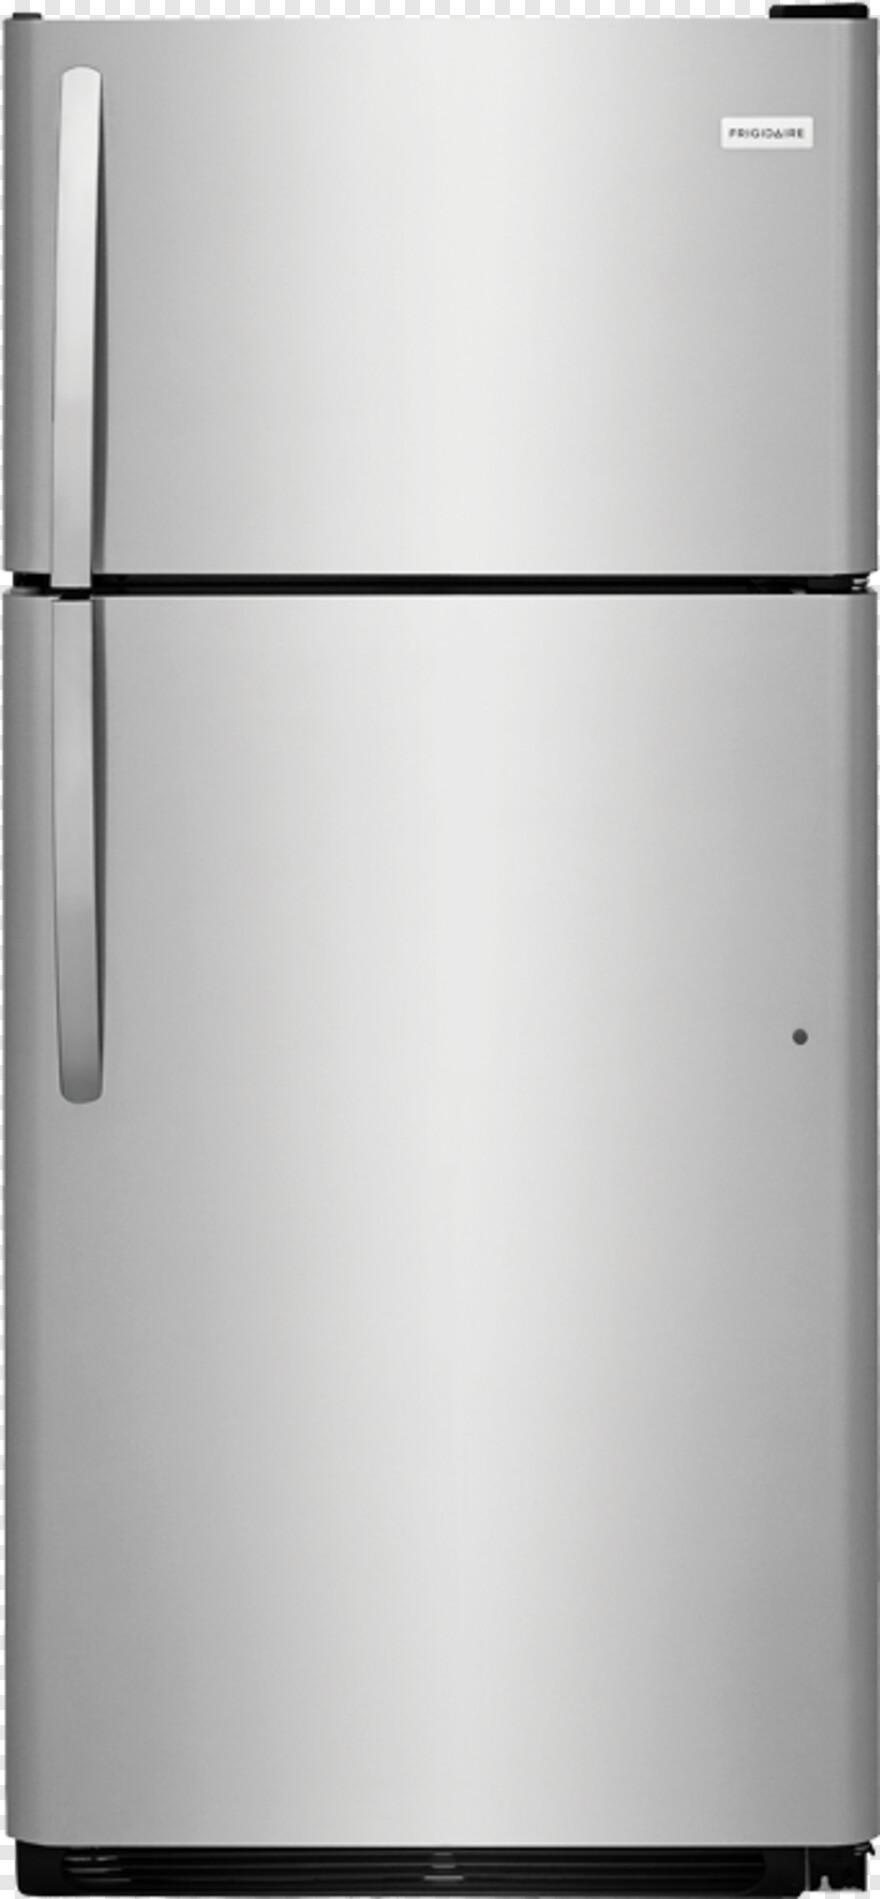 refrigerator # 636755